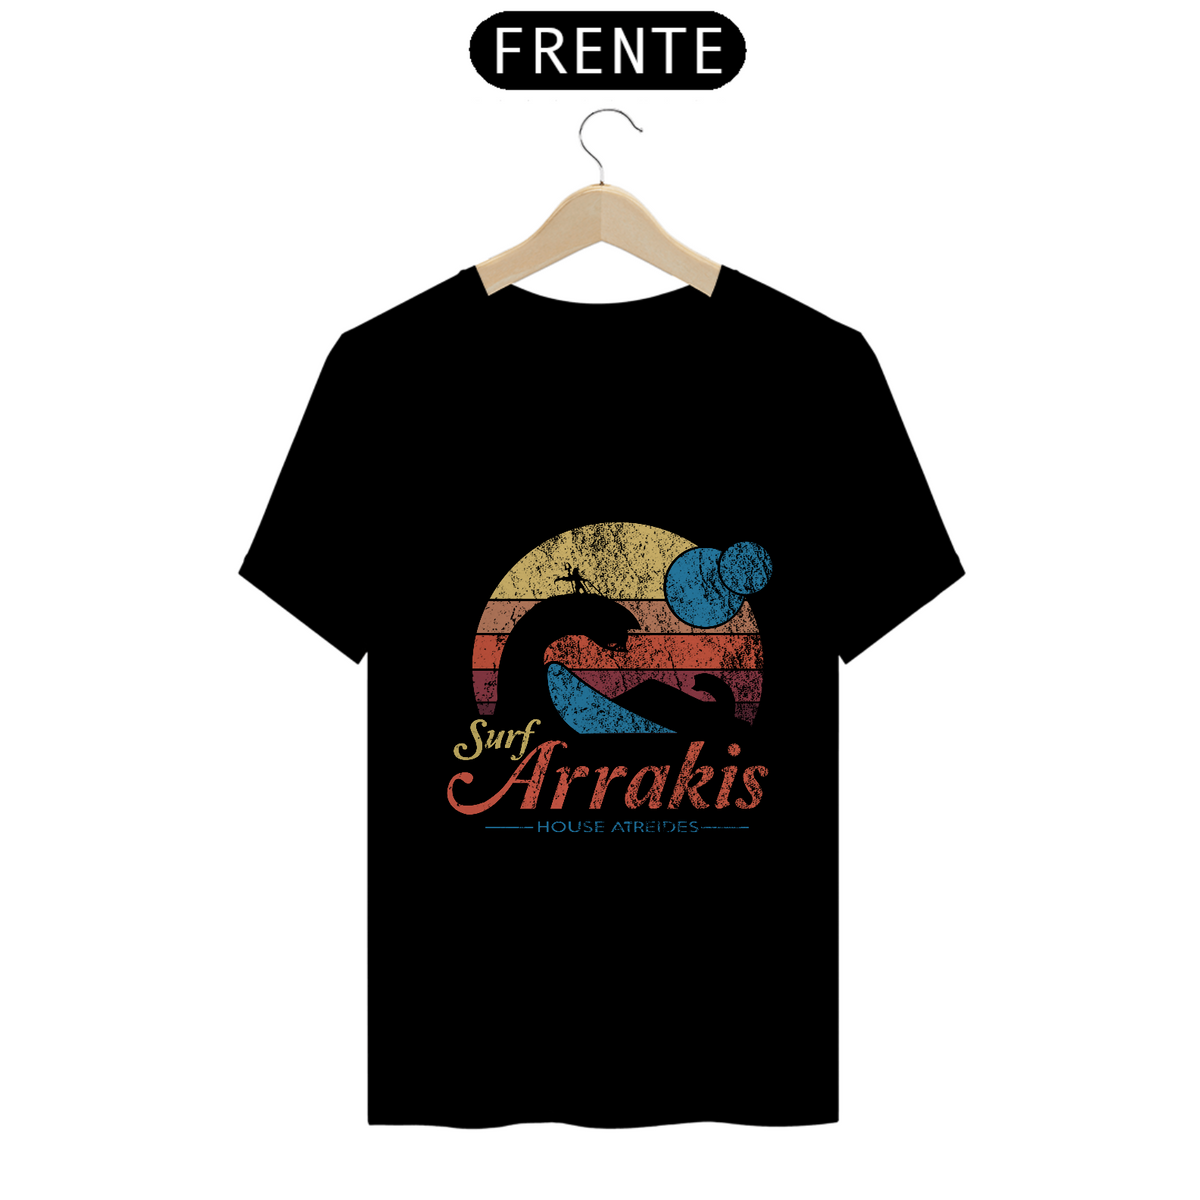 Nome do produto: Camiseta Surf Arrakis (Duna)